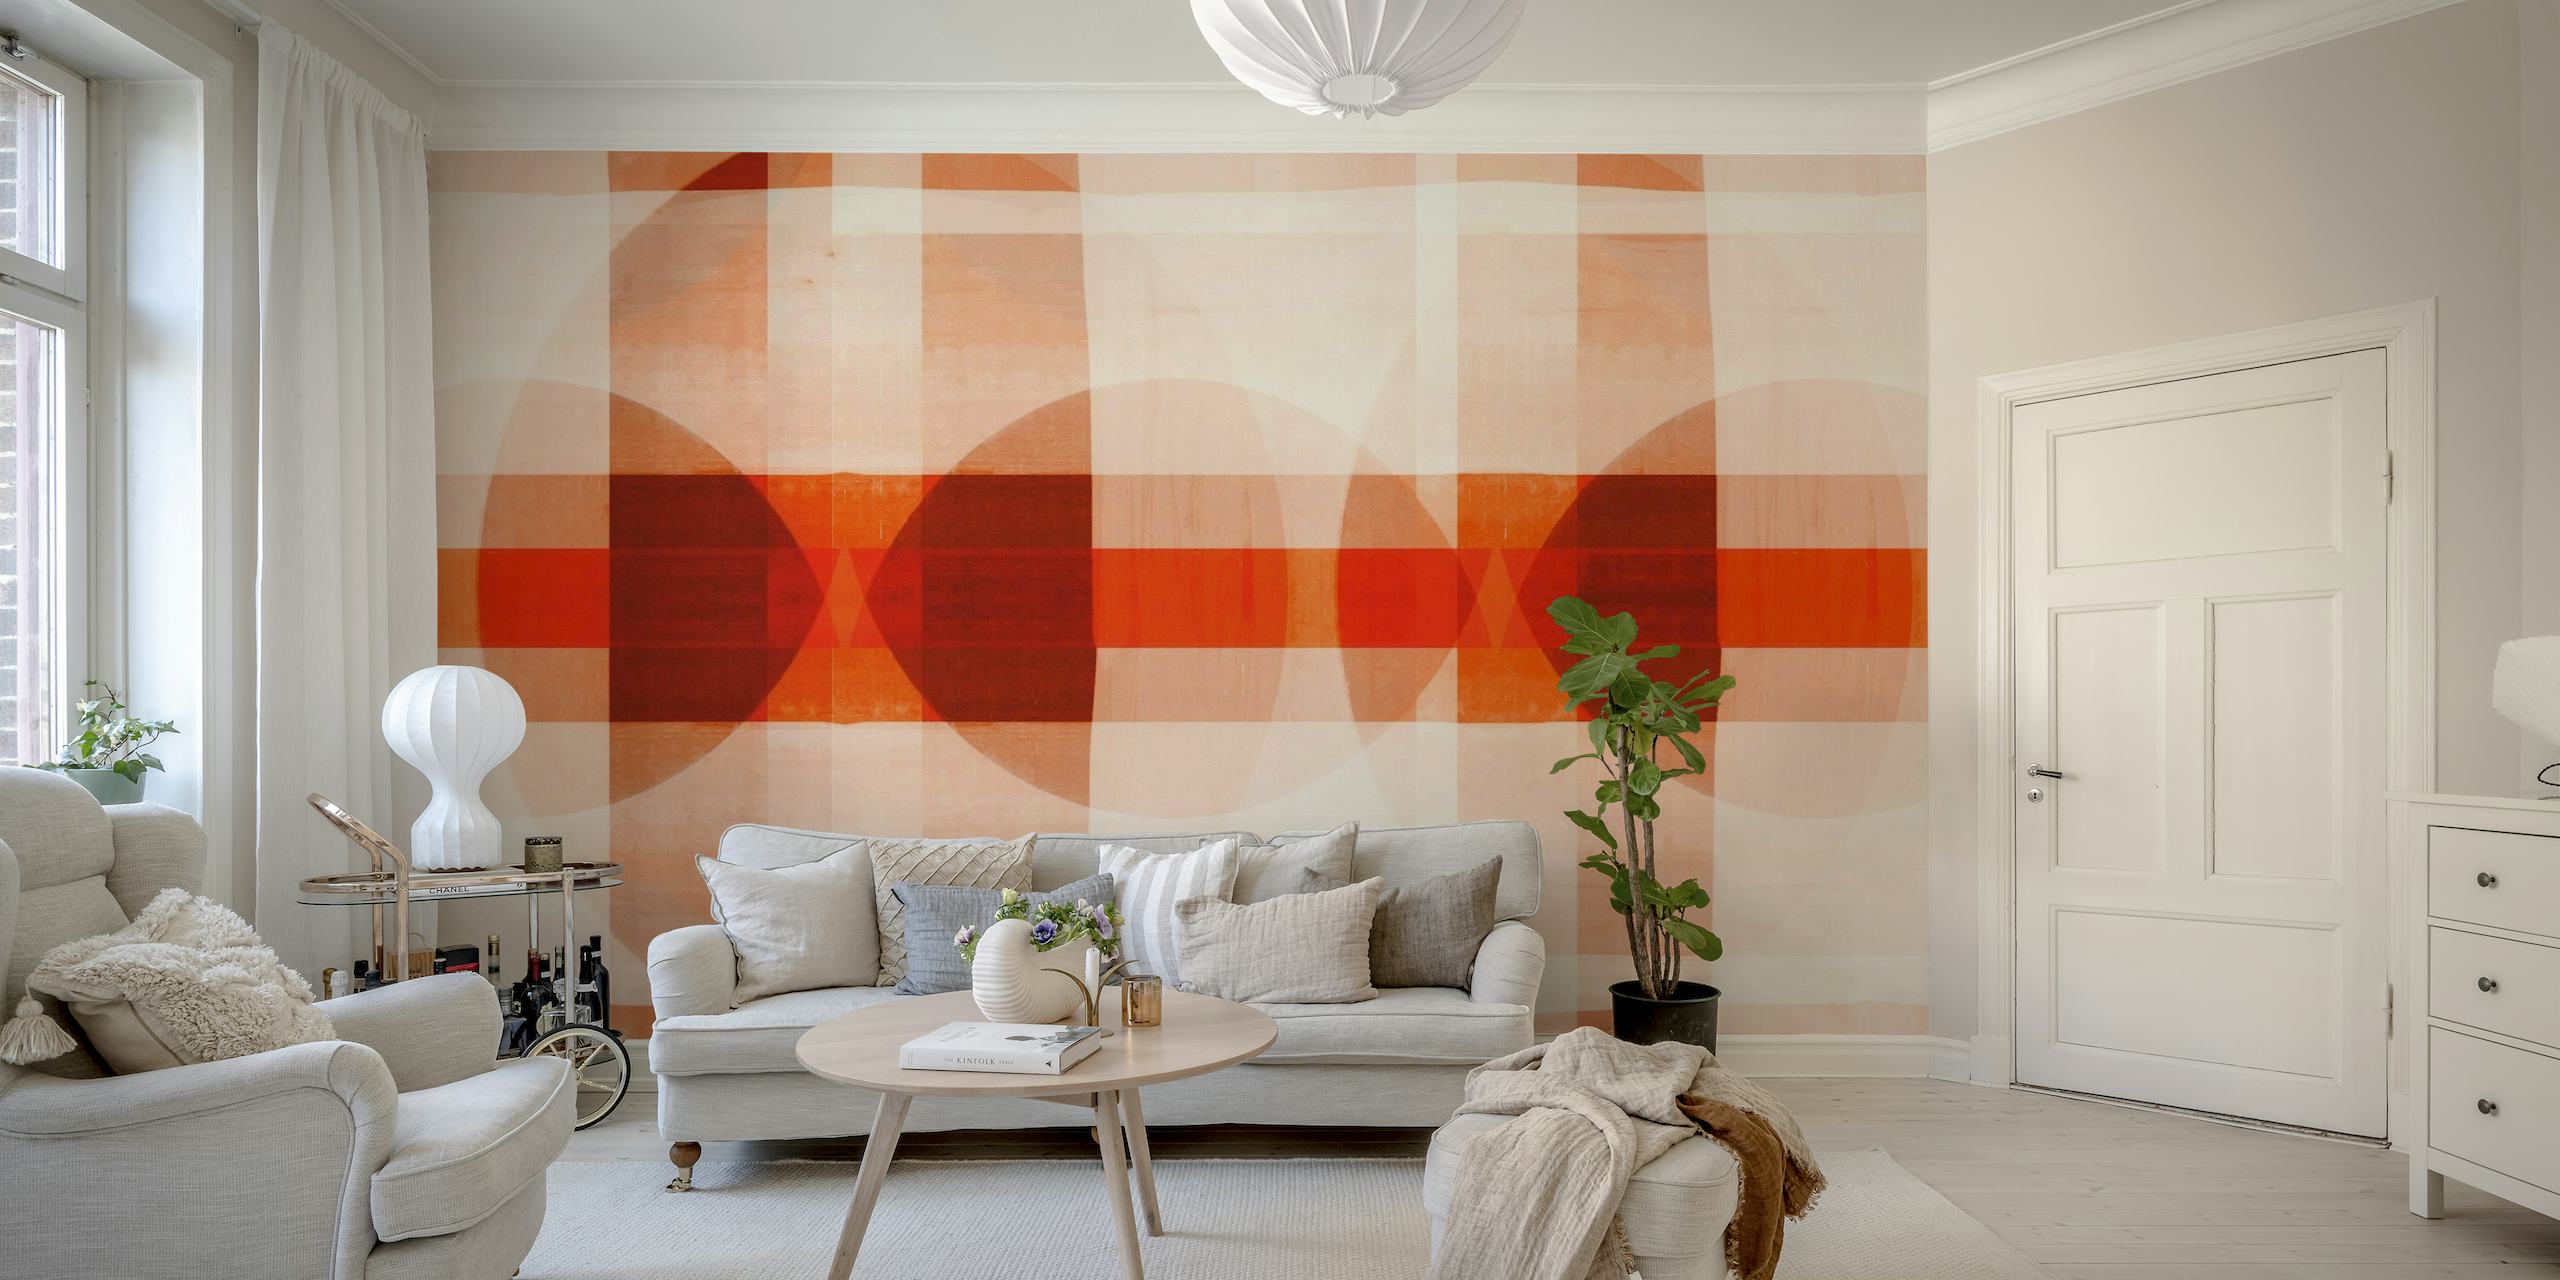 Mozaiková fototapeta inspirovaná Bauhausem s geometrickými vzory v teplých barvách